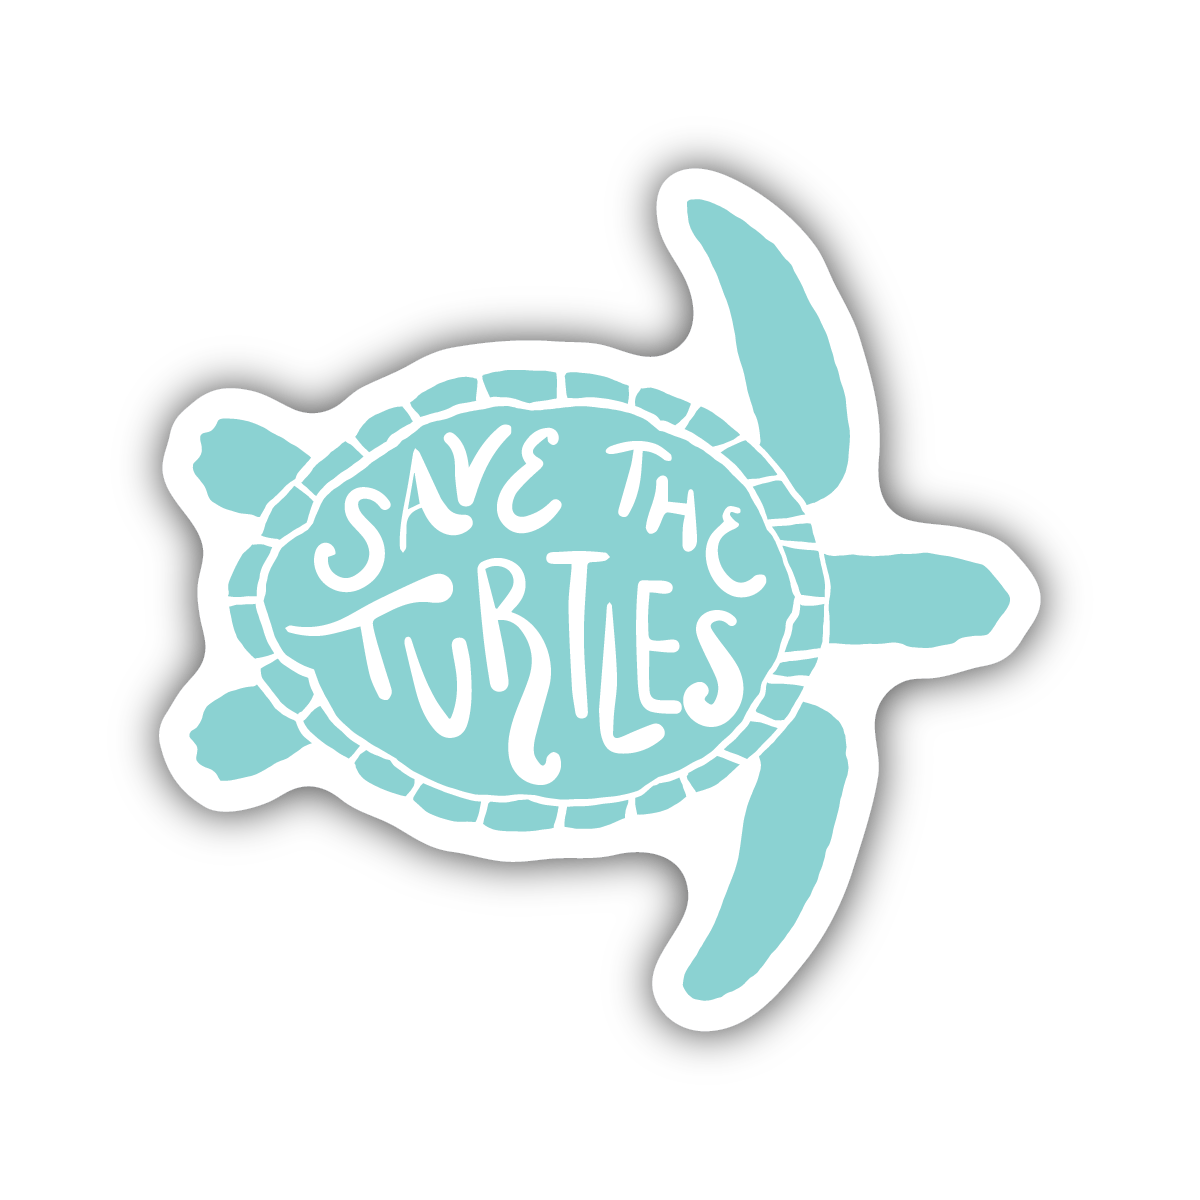 Save The Turtles Sticker Stickers Northwest 